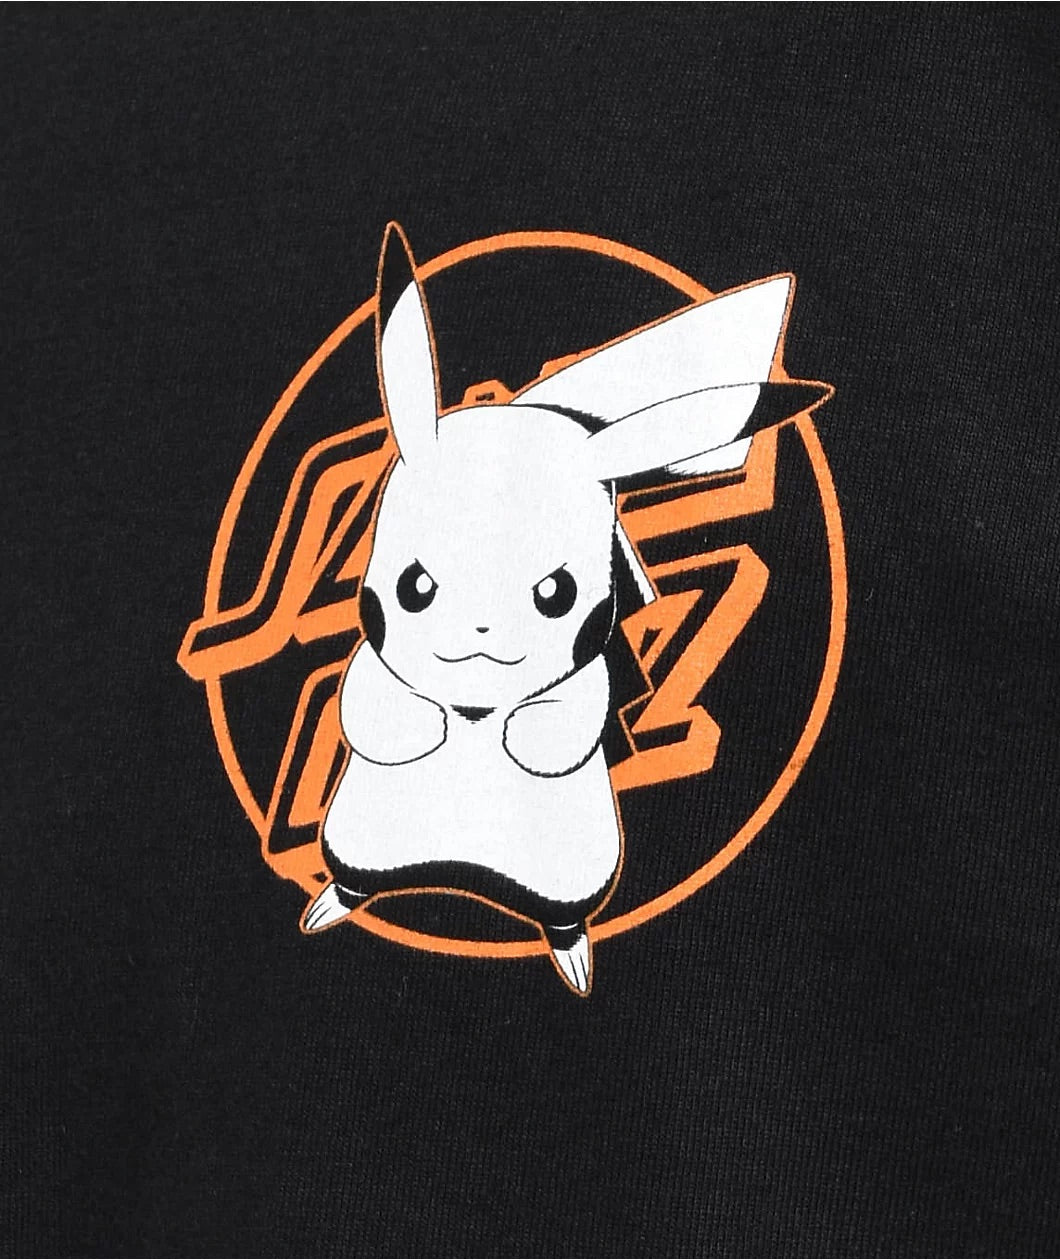 Santa Cruz & Pokémon Pikachu Shirt